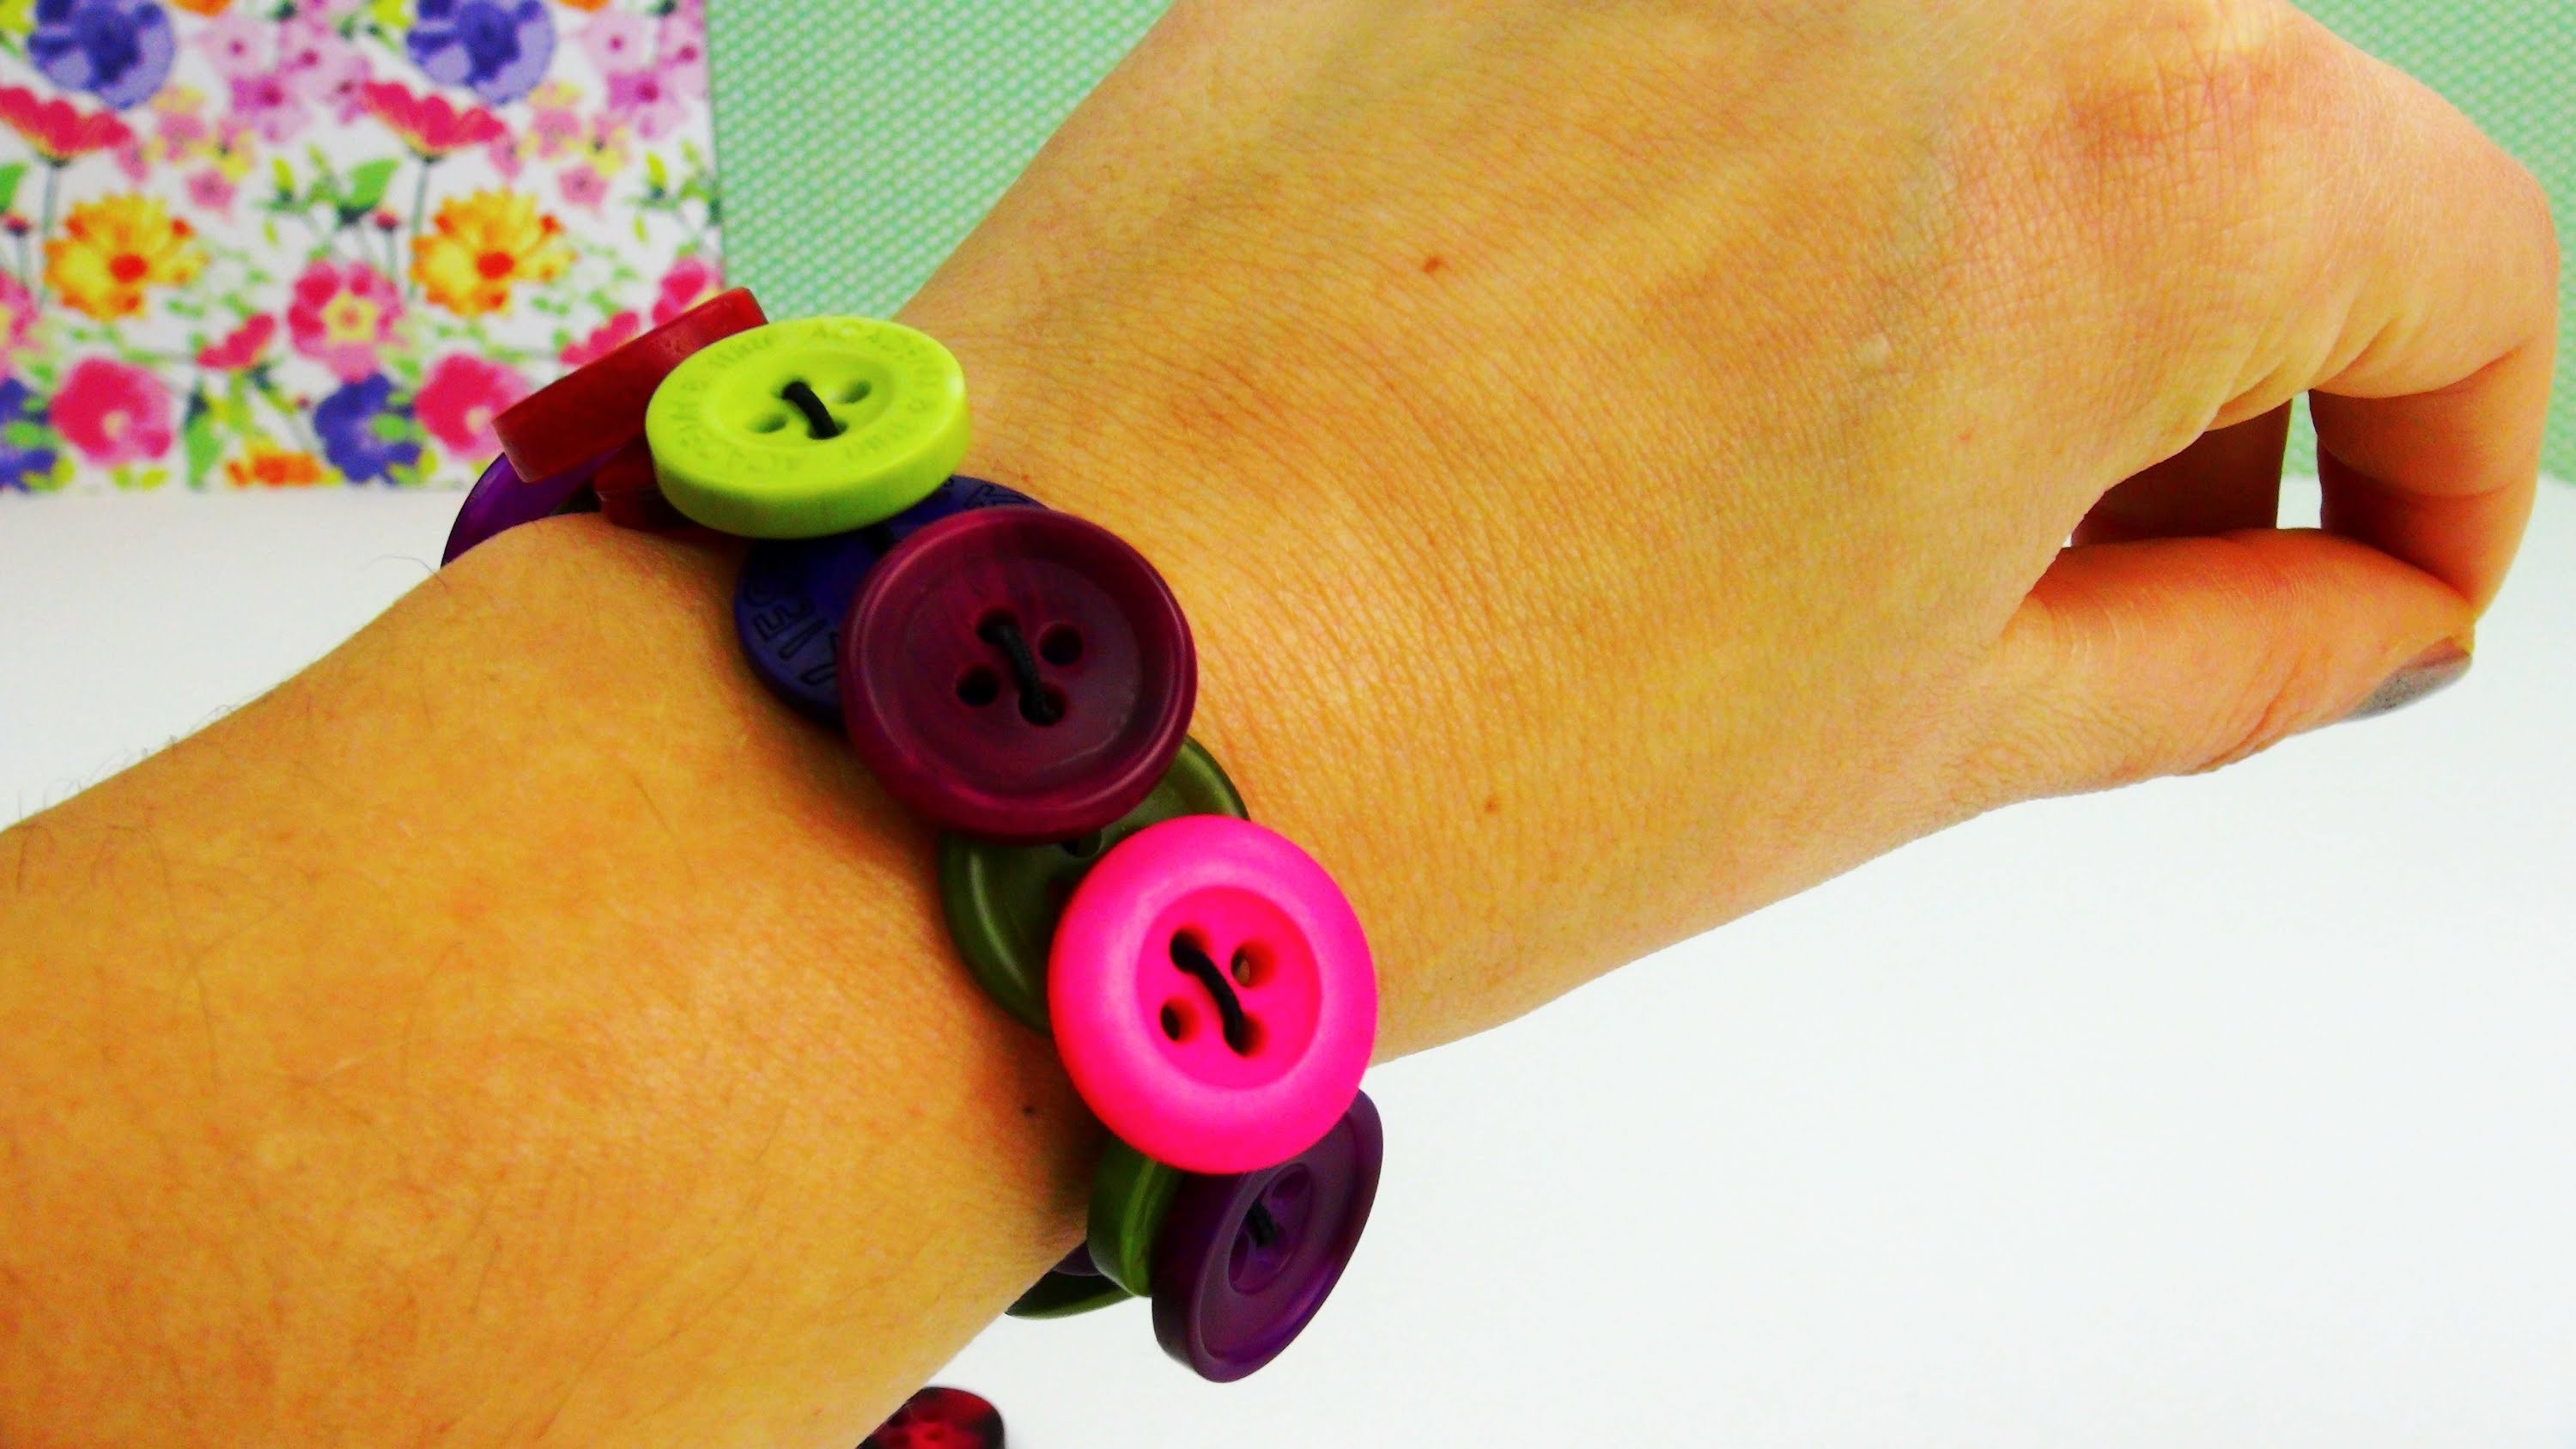 DIY Knopf Armband. Armband aus Knöpfen schnell gemacht! Button Bracelet Tutorial | deutsch